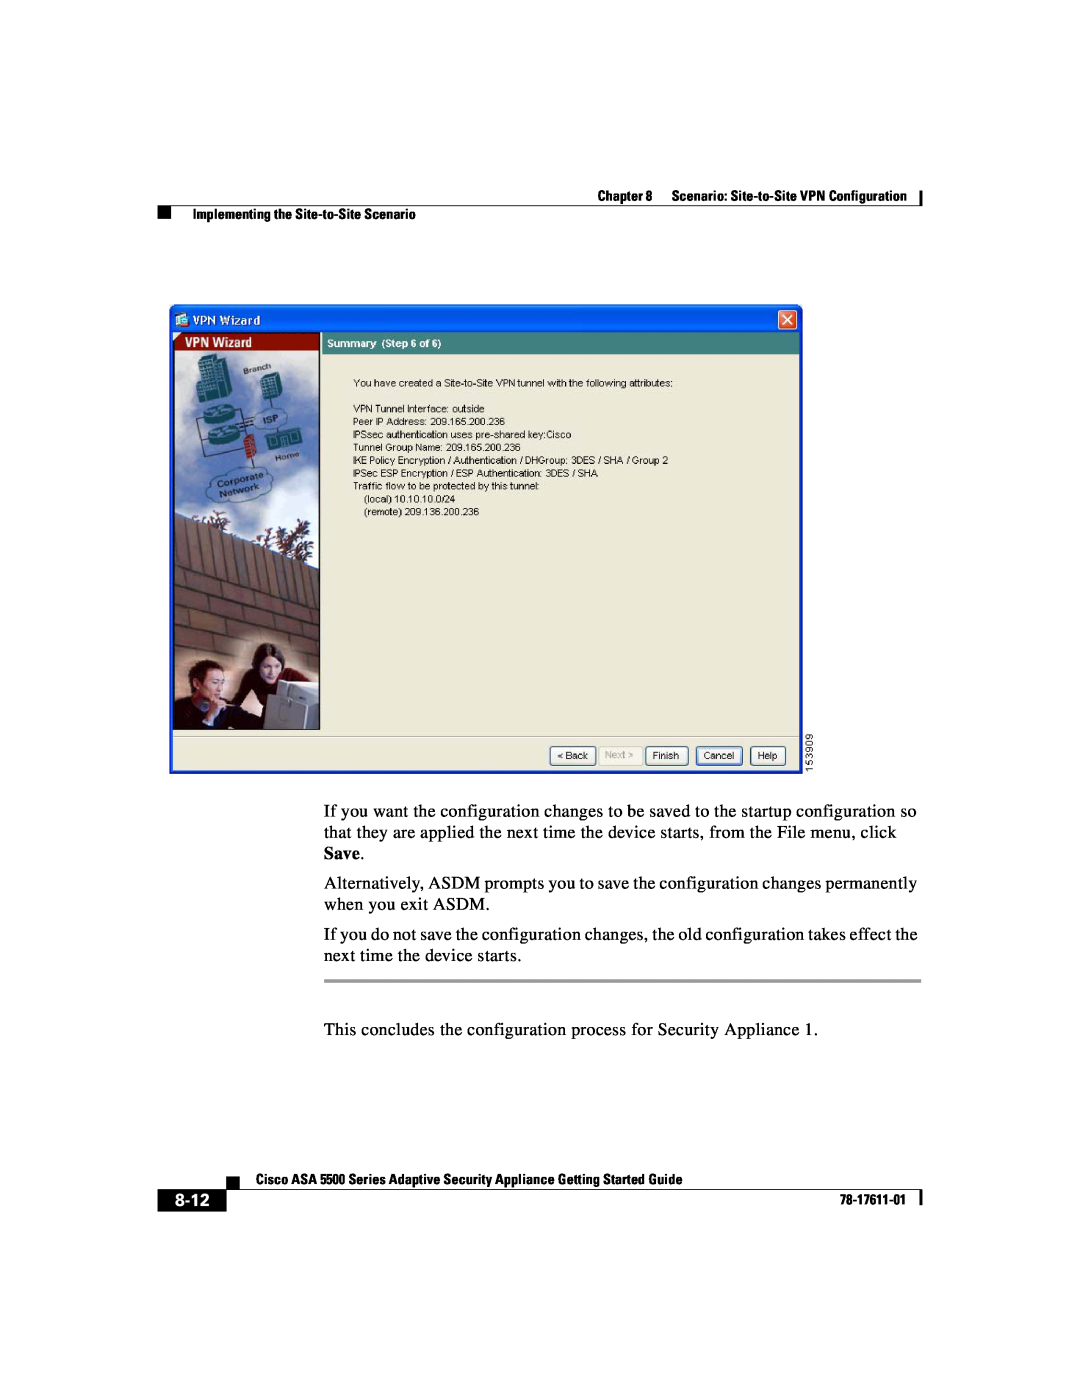 Cisco Systems ASA 5500 manual 8-12 